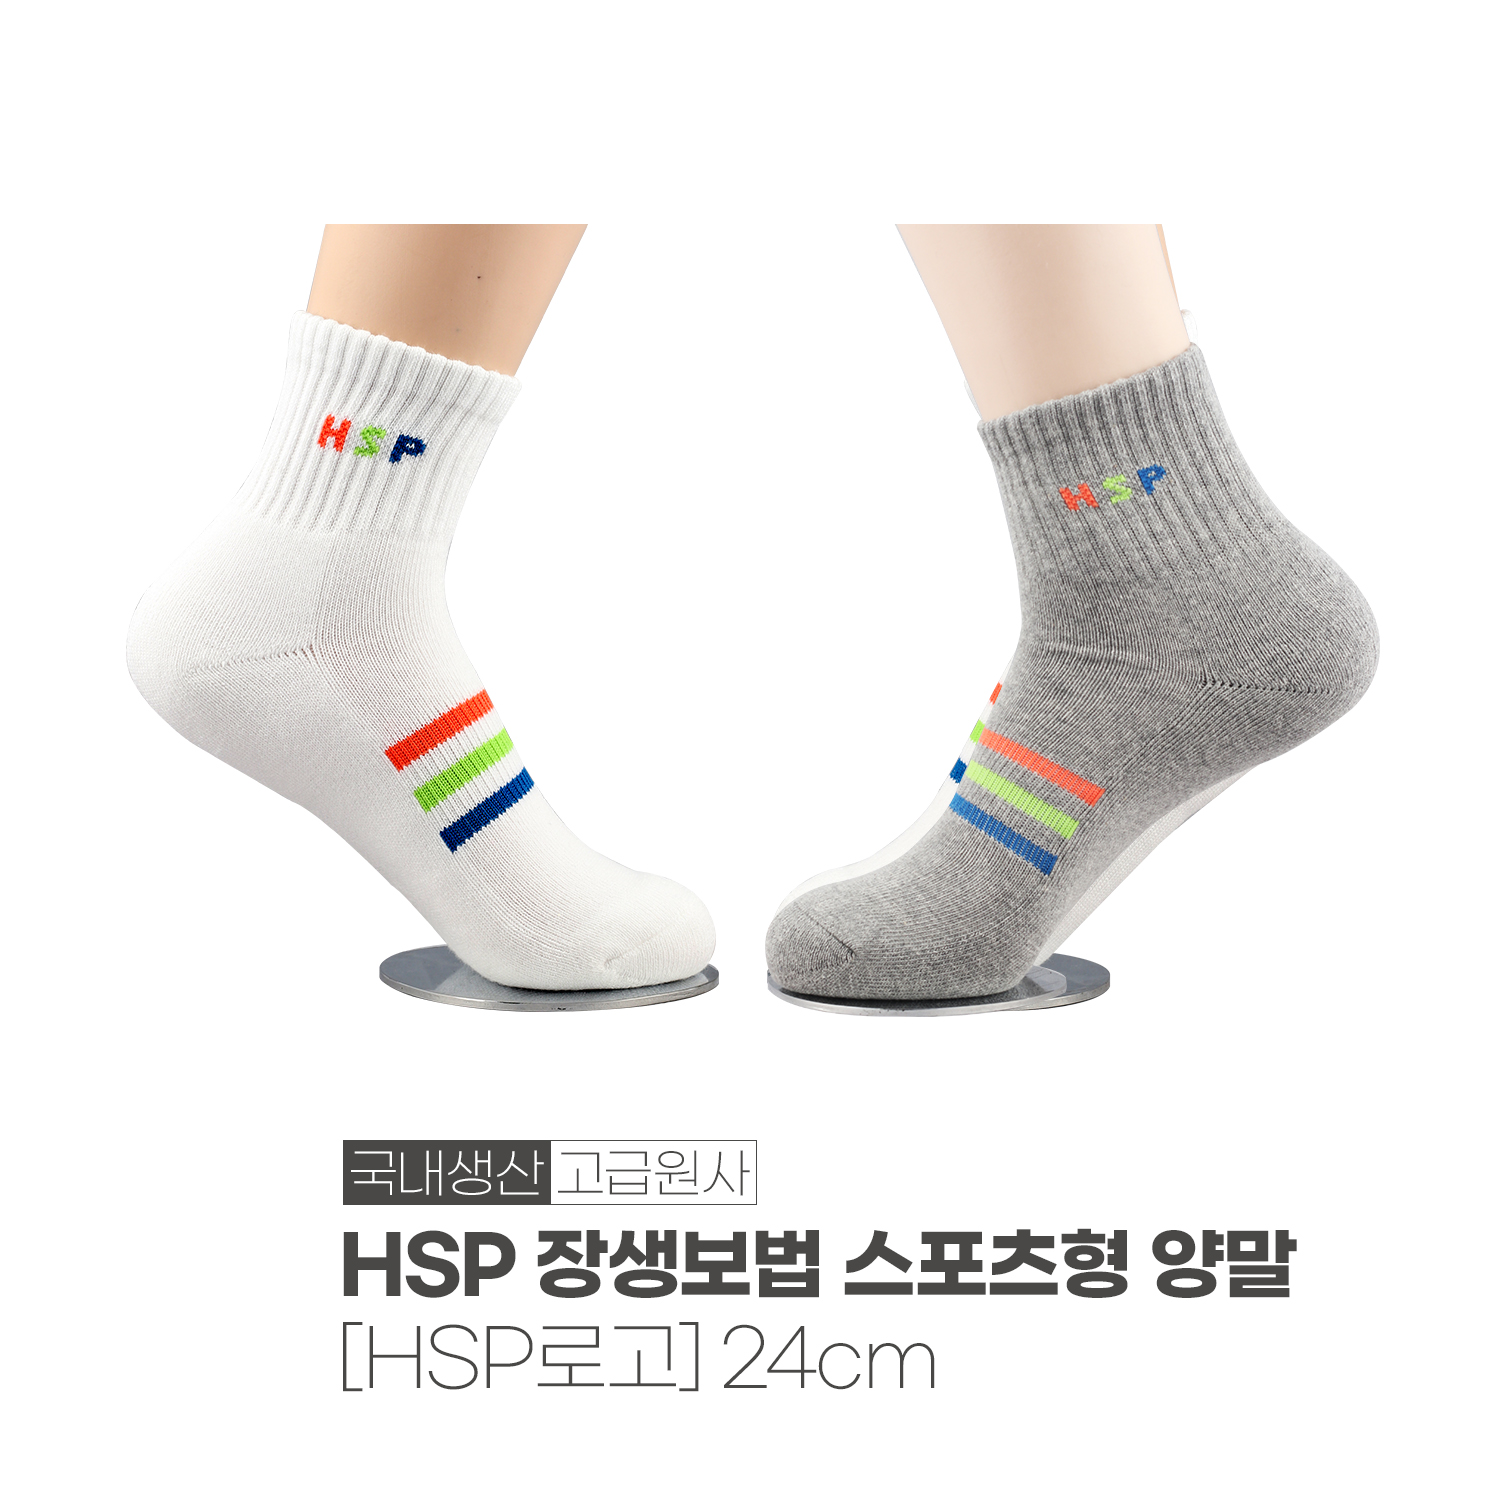 HSP 장생보법 스포츠형 양말 / HSP로고 (화이트/그레이)